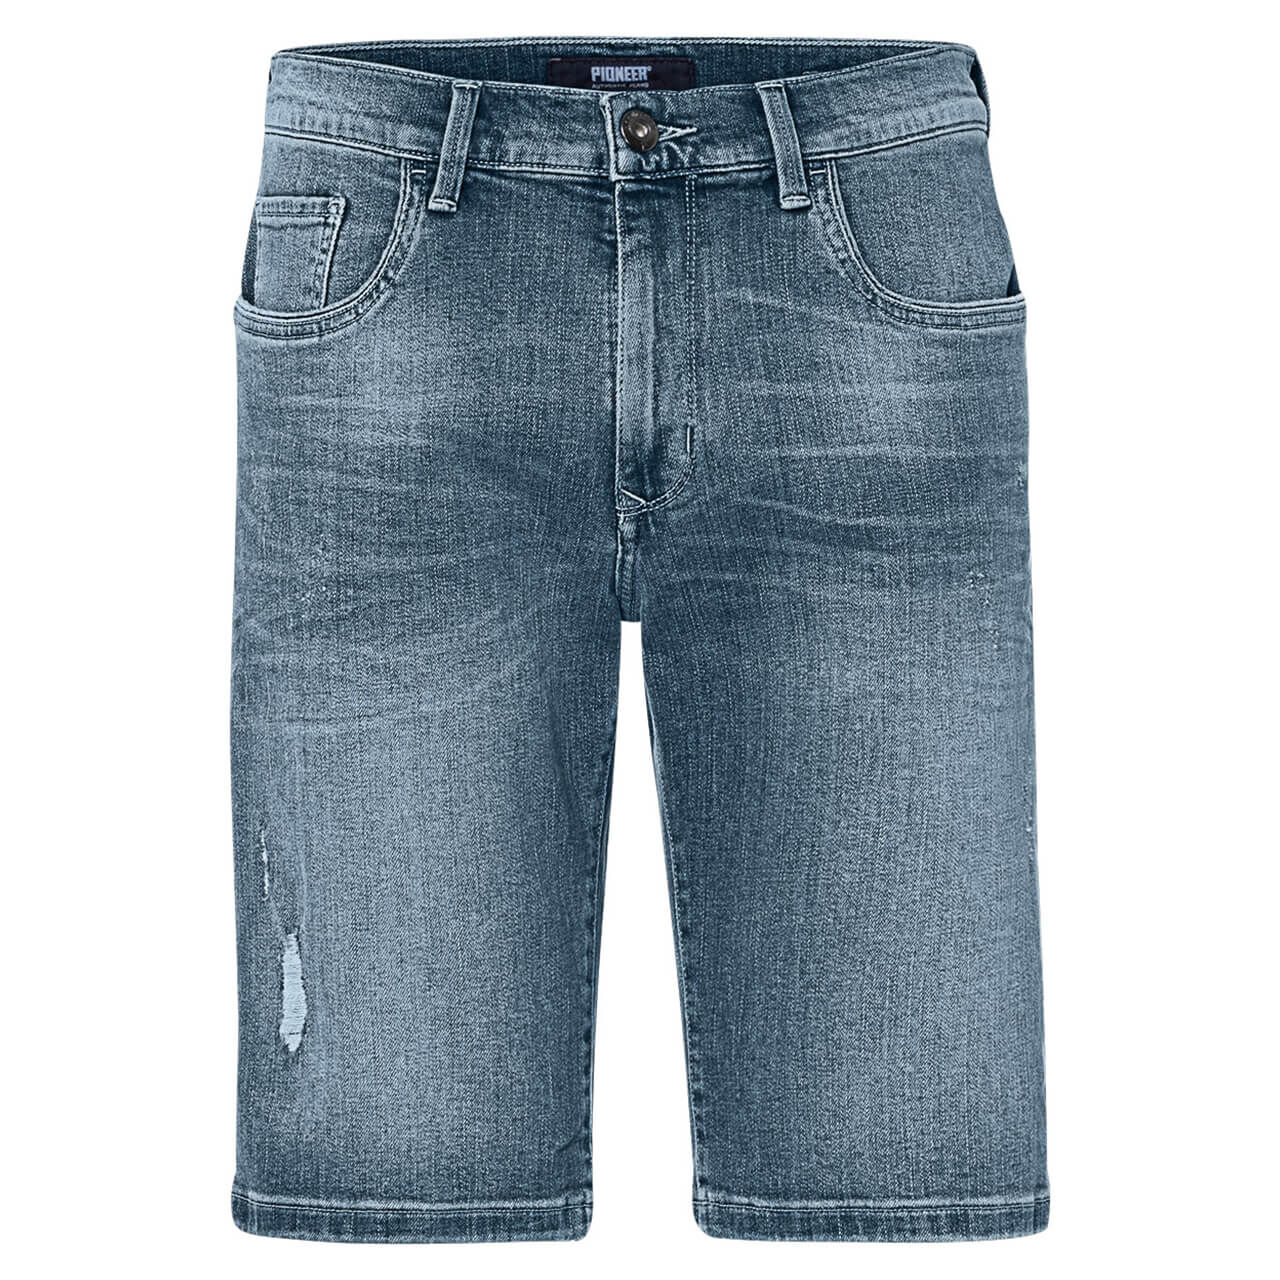 Pioneer Jeans Lenn Bermuda für Herren in Blau verwaschen mit Destroyed-Effekten, FarbNr.: 6847